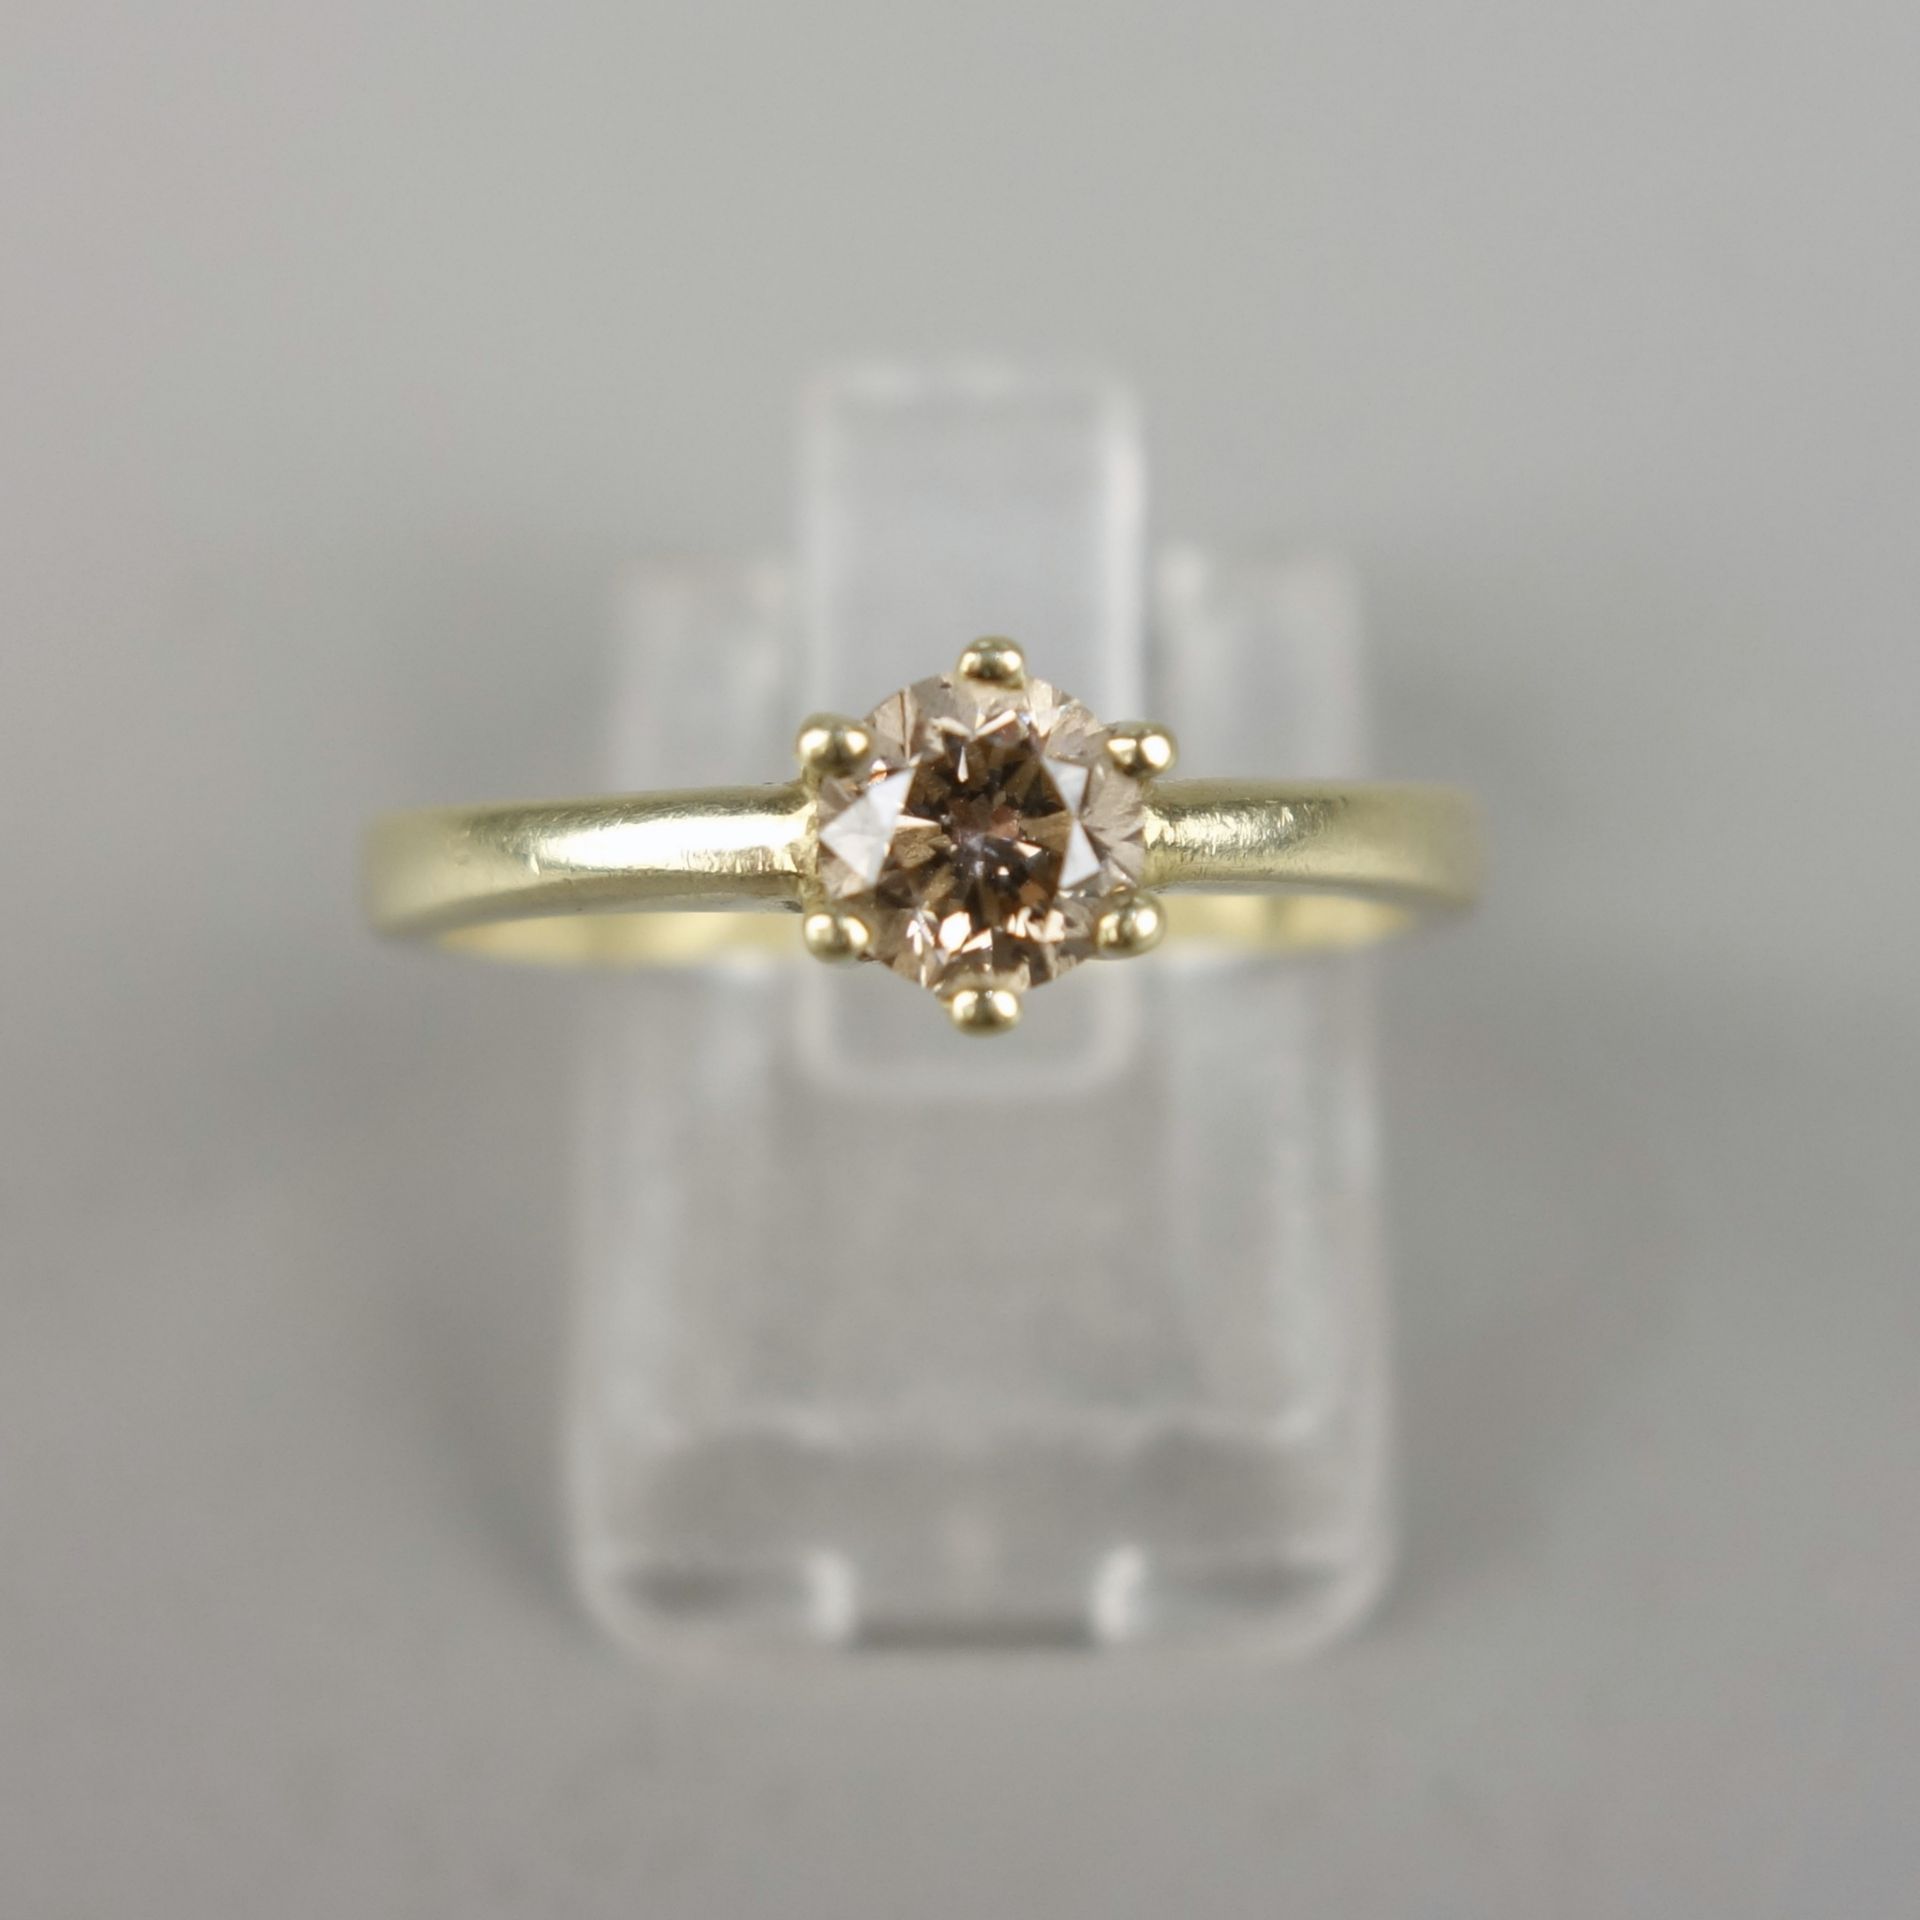 Solitaire-Ring, 585er Gold, Gew.3,51g, Fancy-Brillant, 0,50ct (gez.), Krappenfa - Bild 2 aus 3